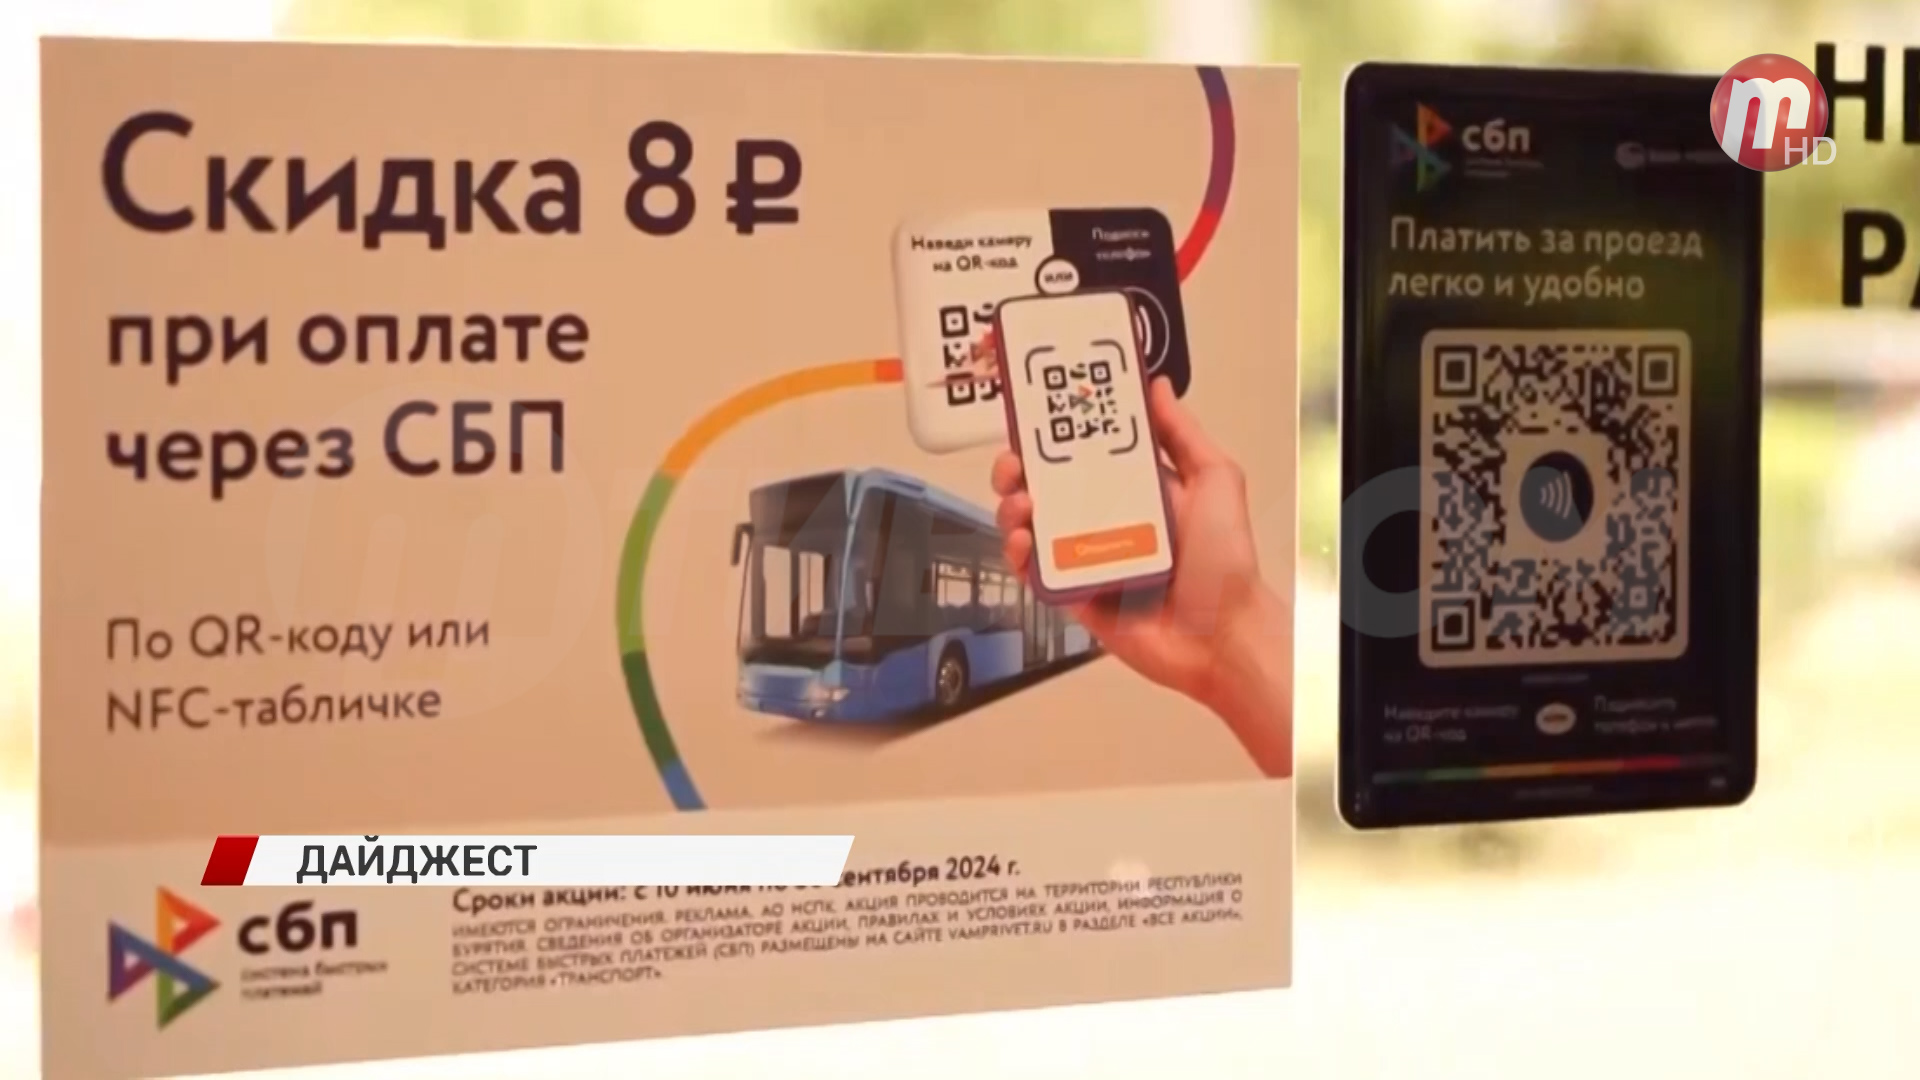 В Улан-Удэ появится трамвай №3 / Новости за пару минут 11.07.2024